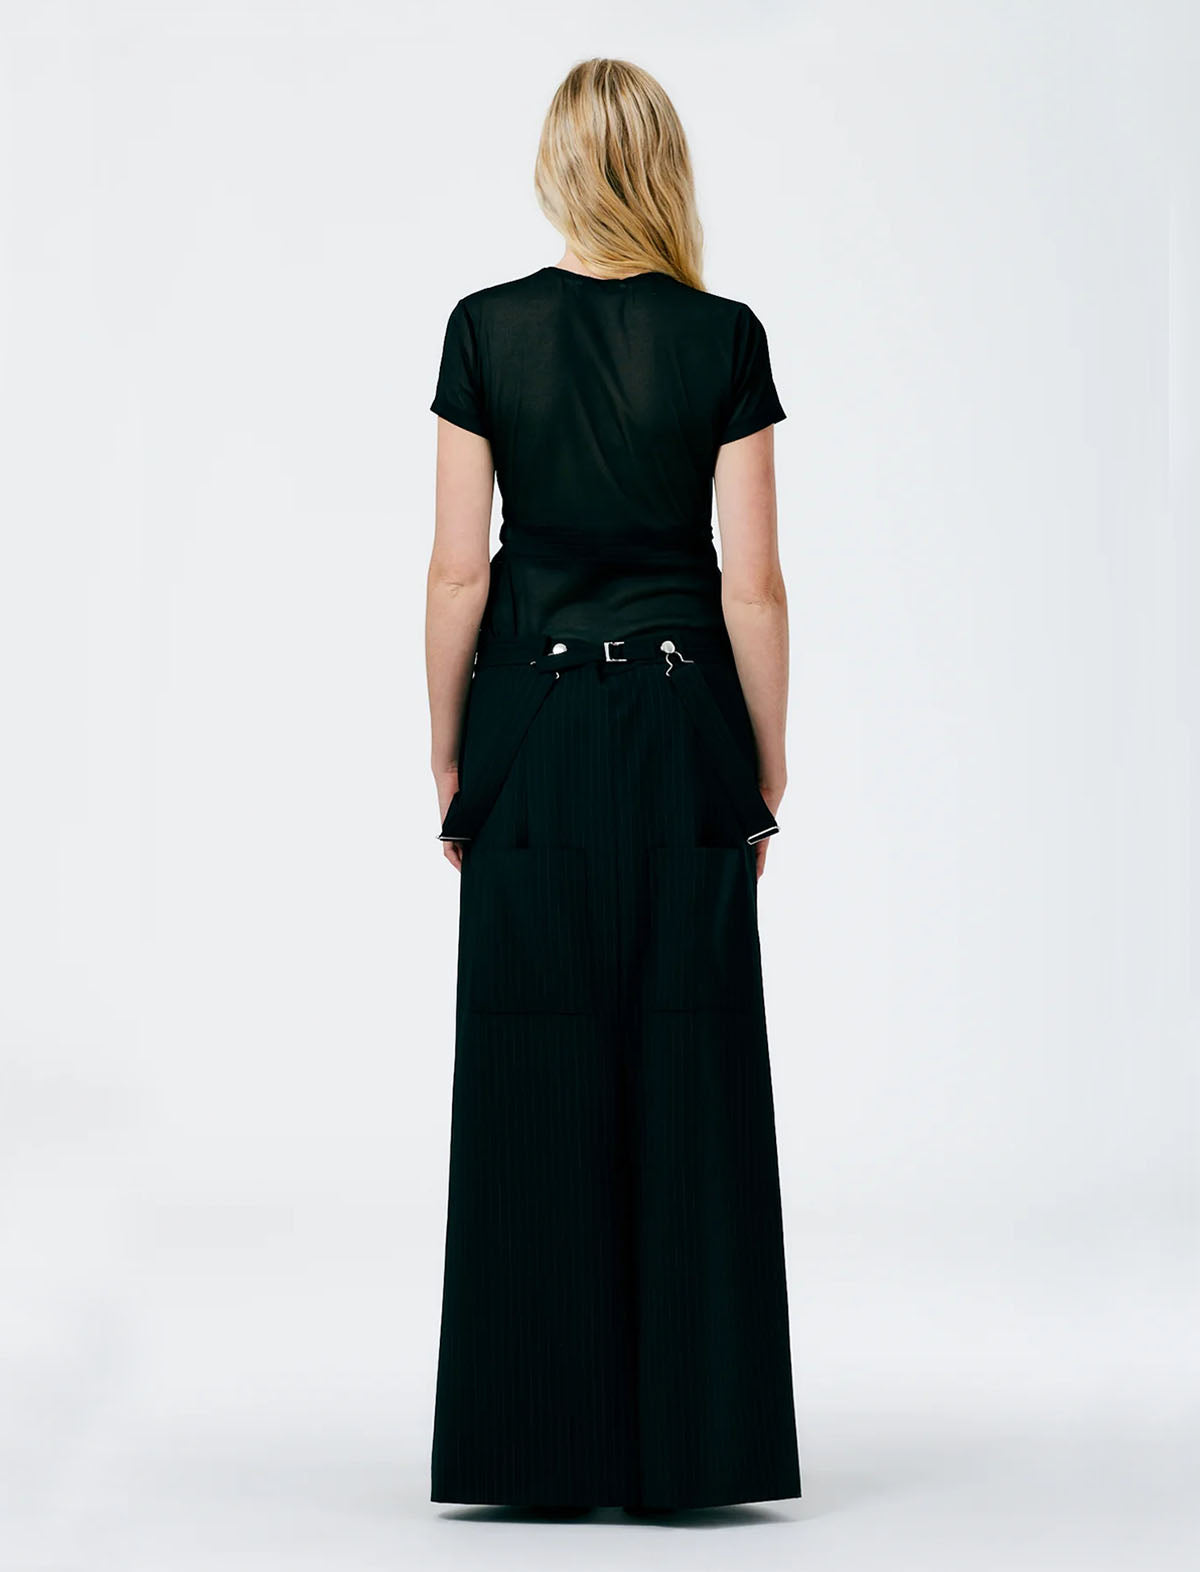 TIBI Dominic Pinstripe Overall Skirt in Black/White Multi